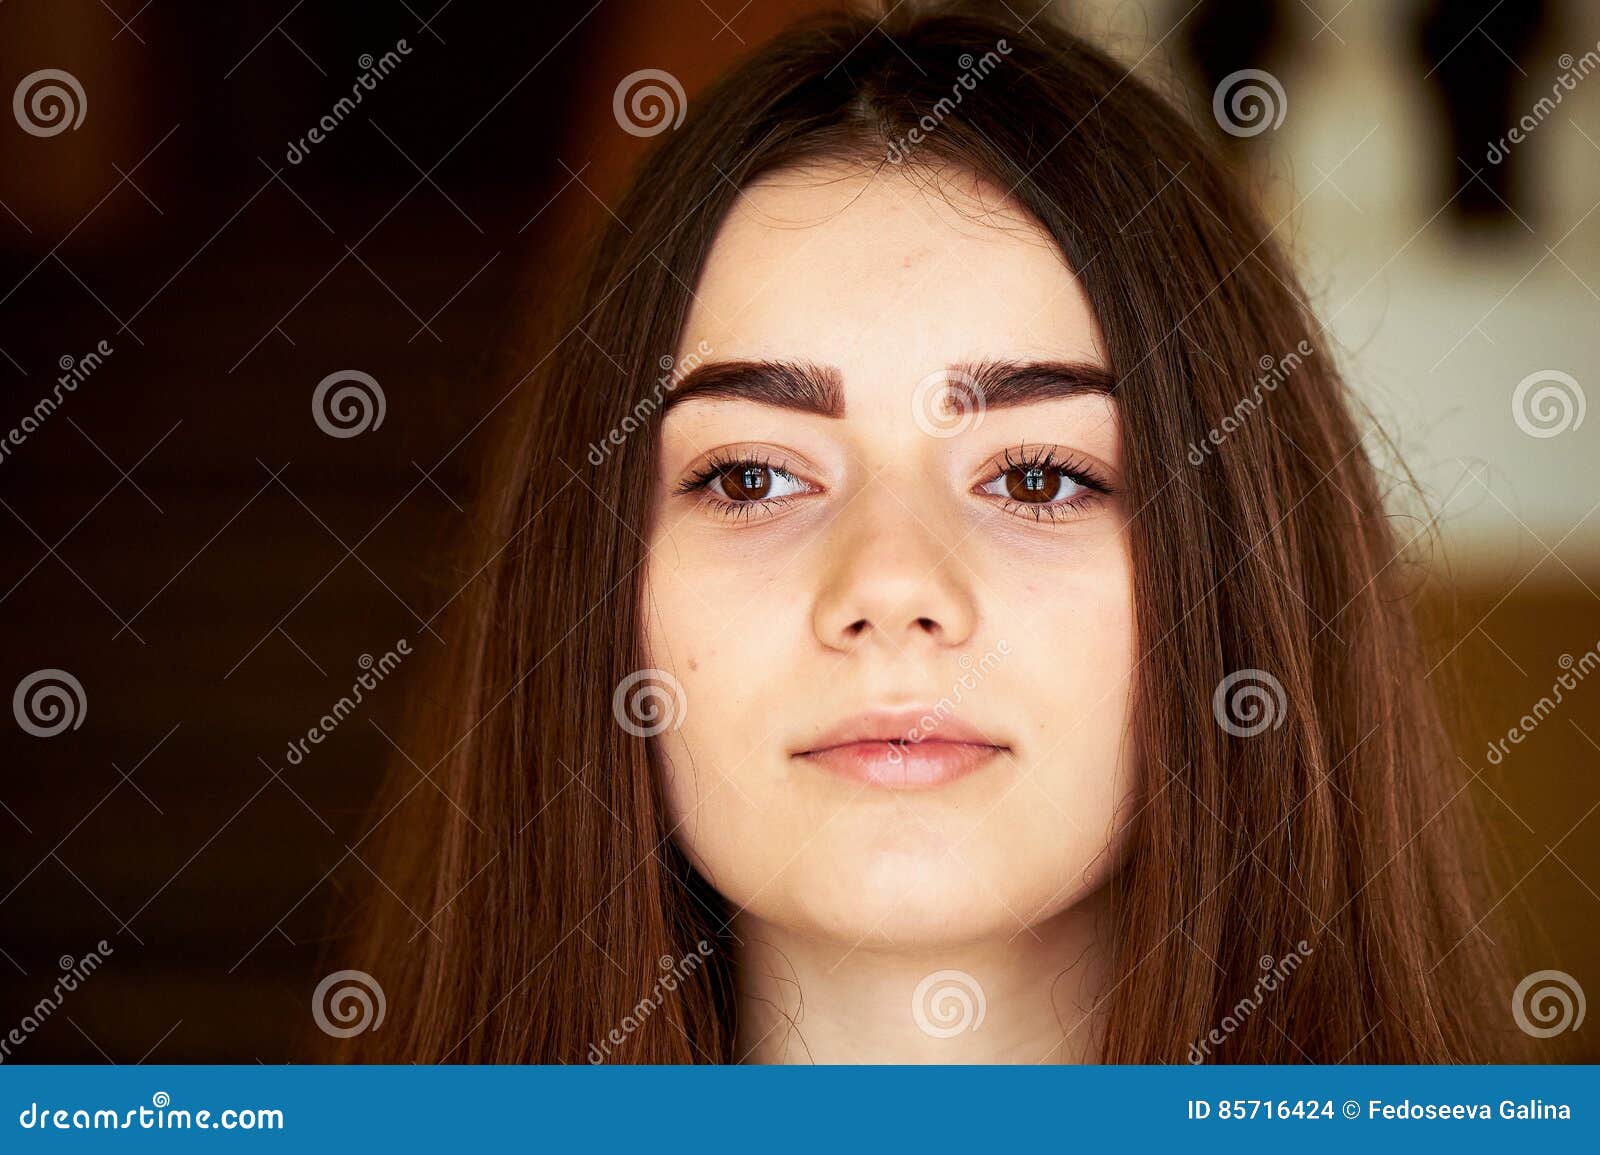 Young Girl Looking At The Camera Long Dark Hair And Brown